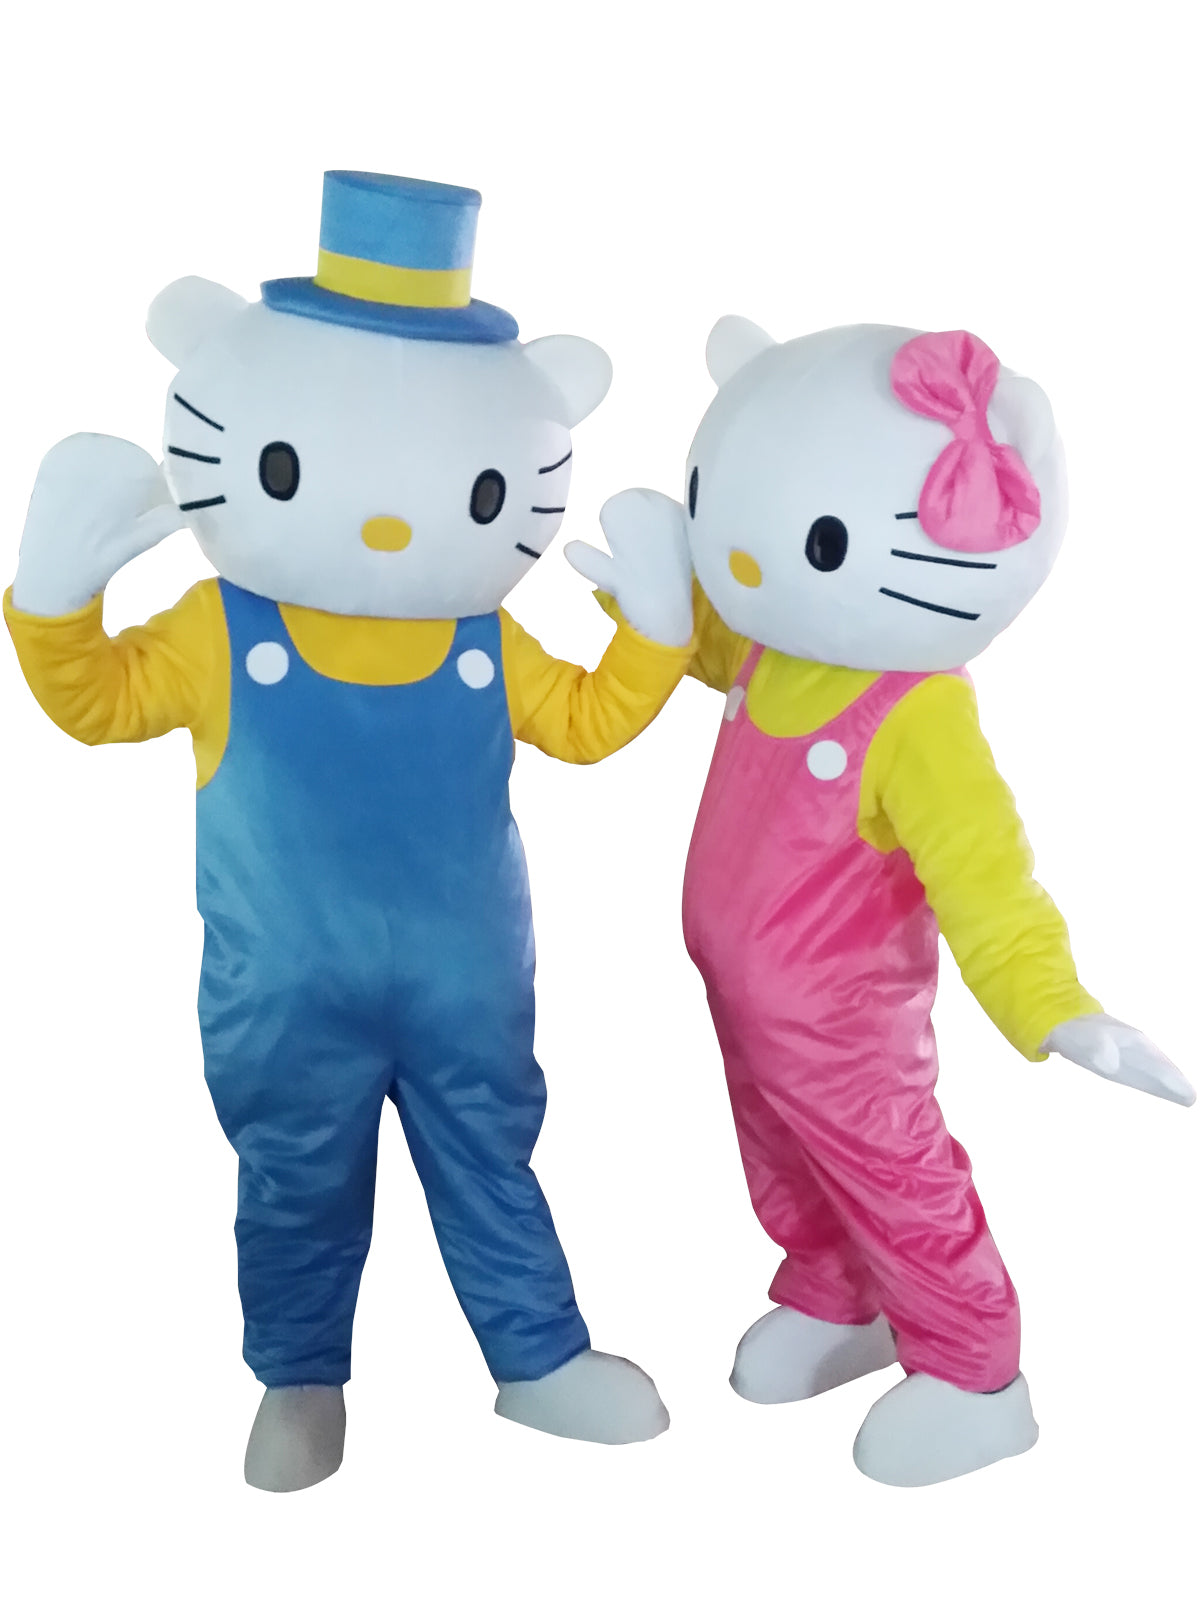 DJ Kitty Mascot Adult Costume